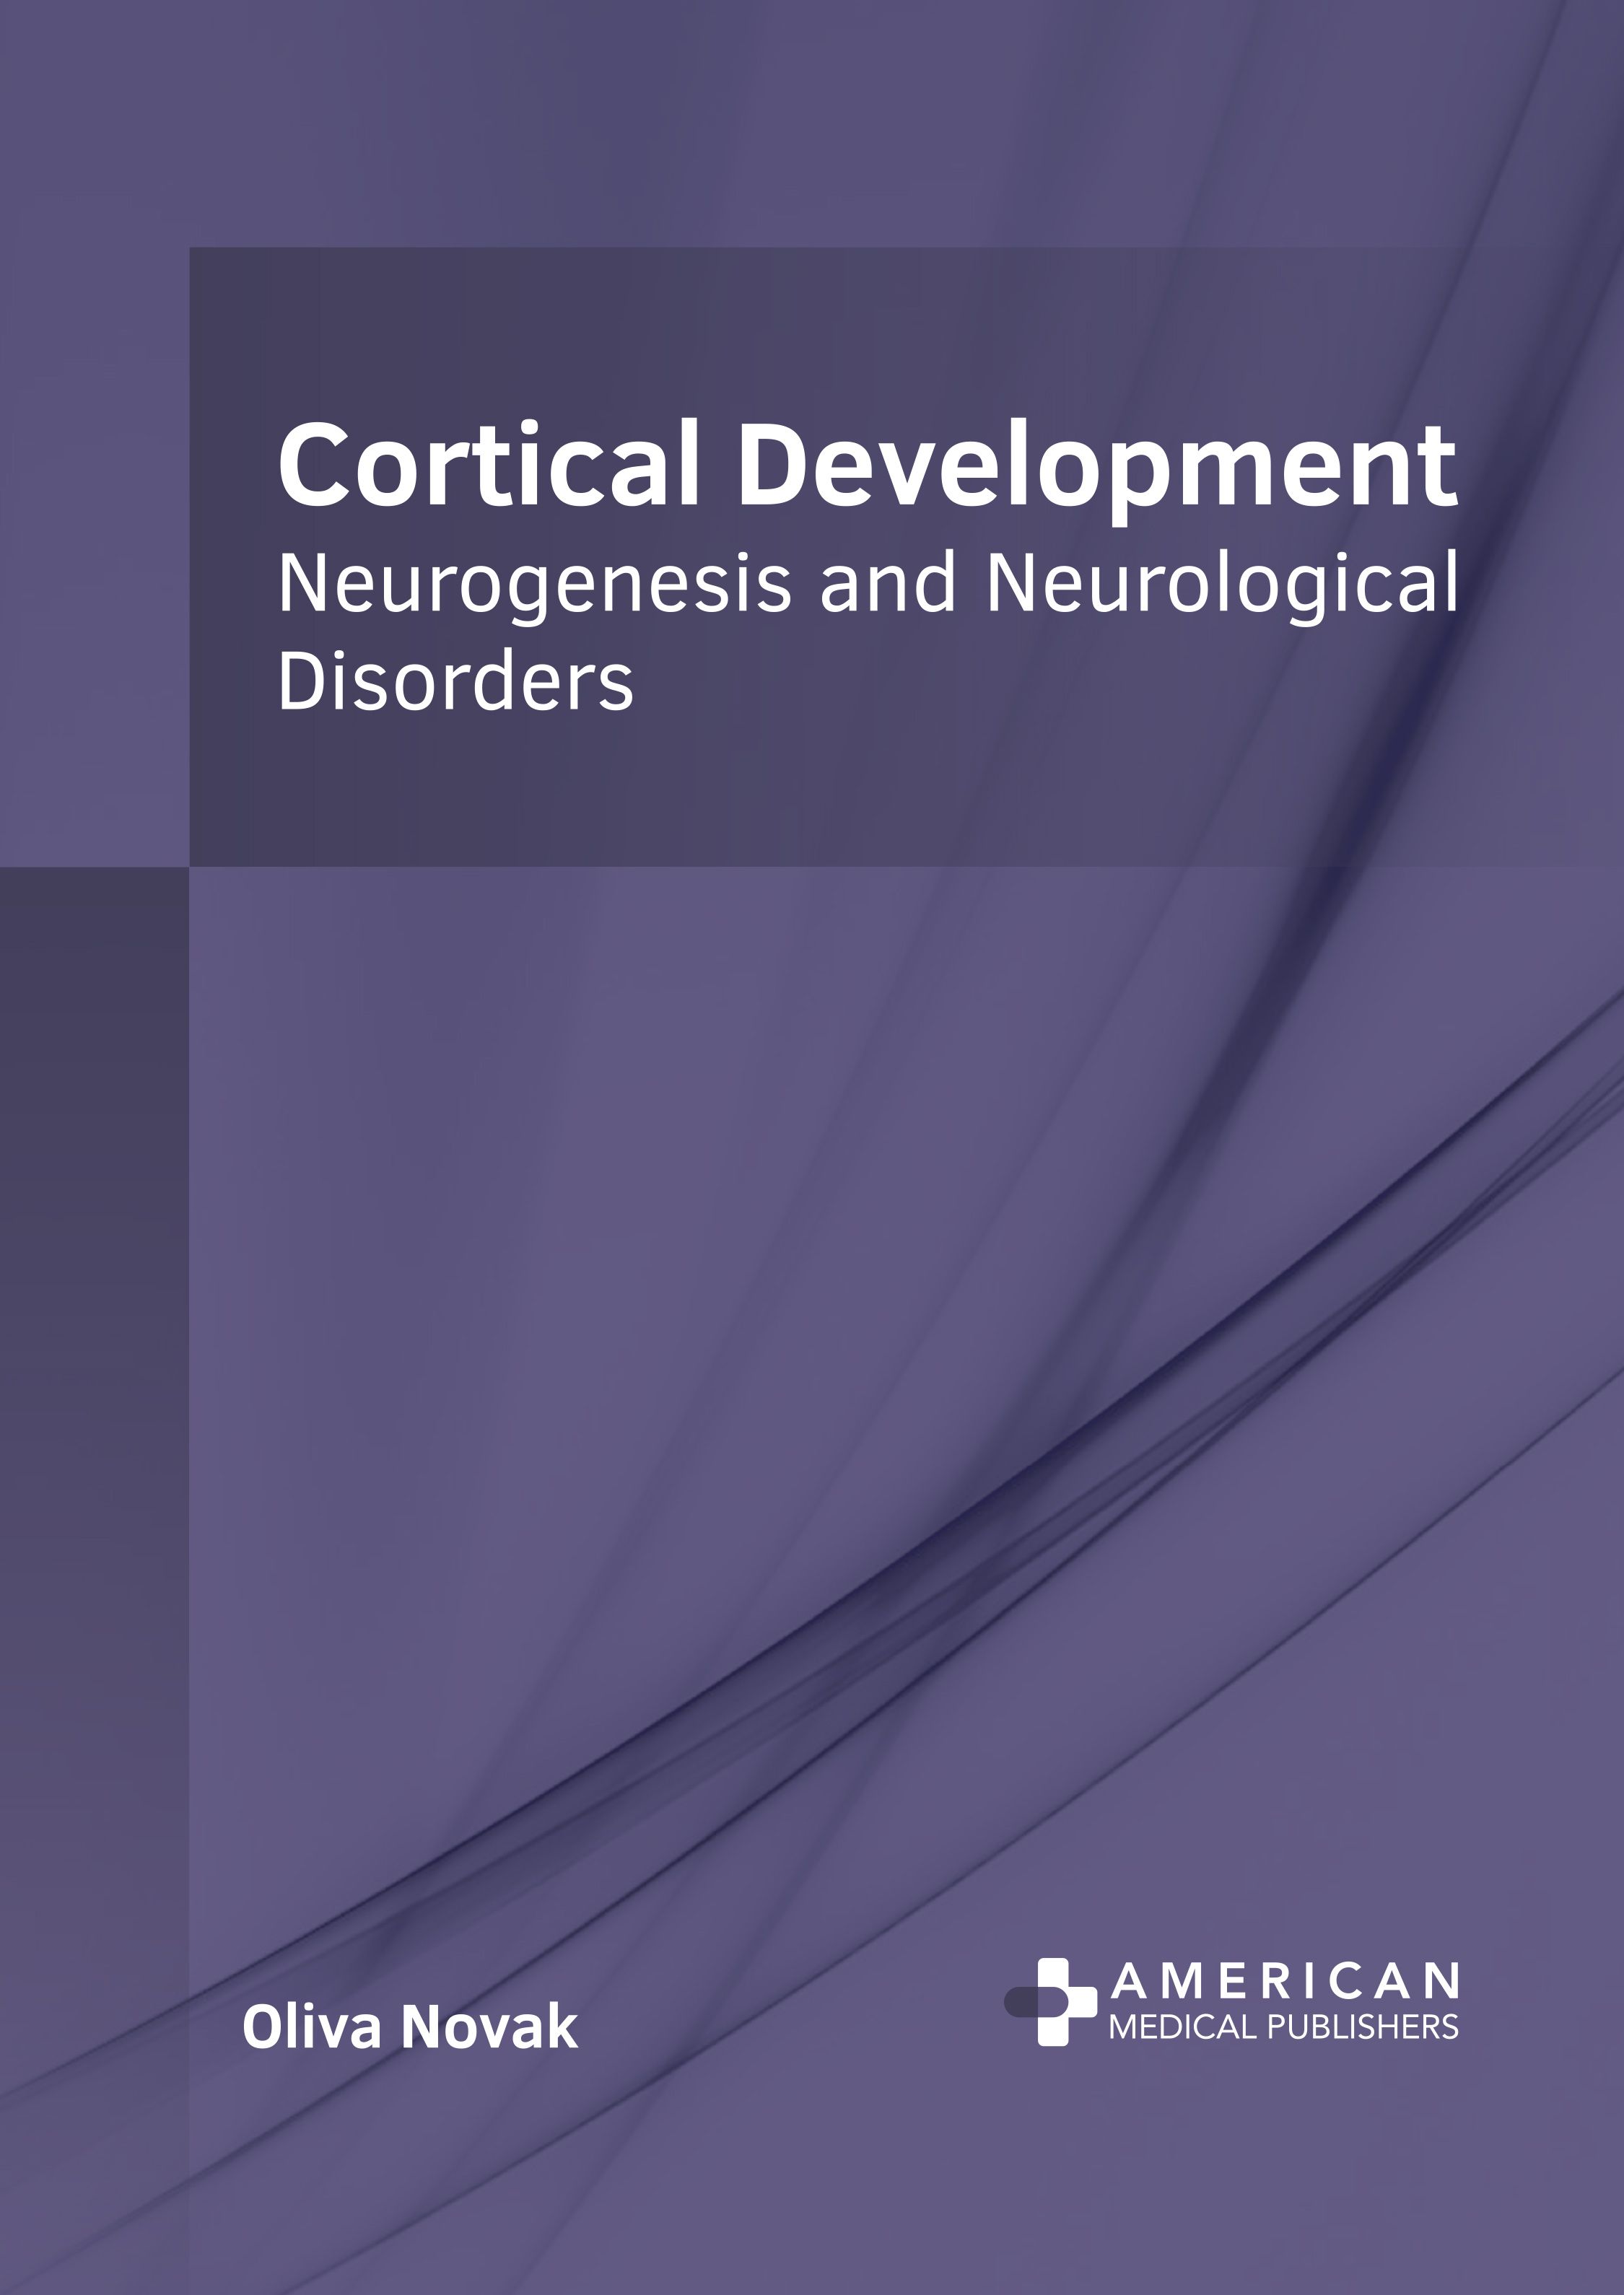 CORTICAL DEVELOPMENT: NEUROGENESIS AND NEUROLOGICAL DISORDERS